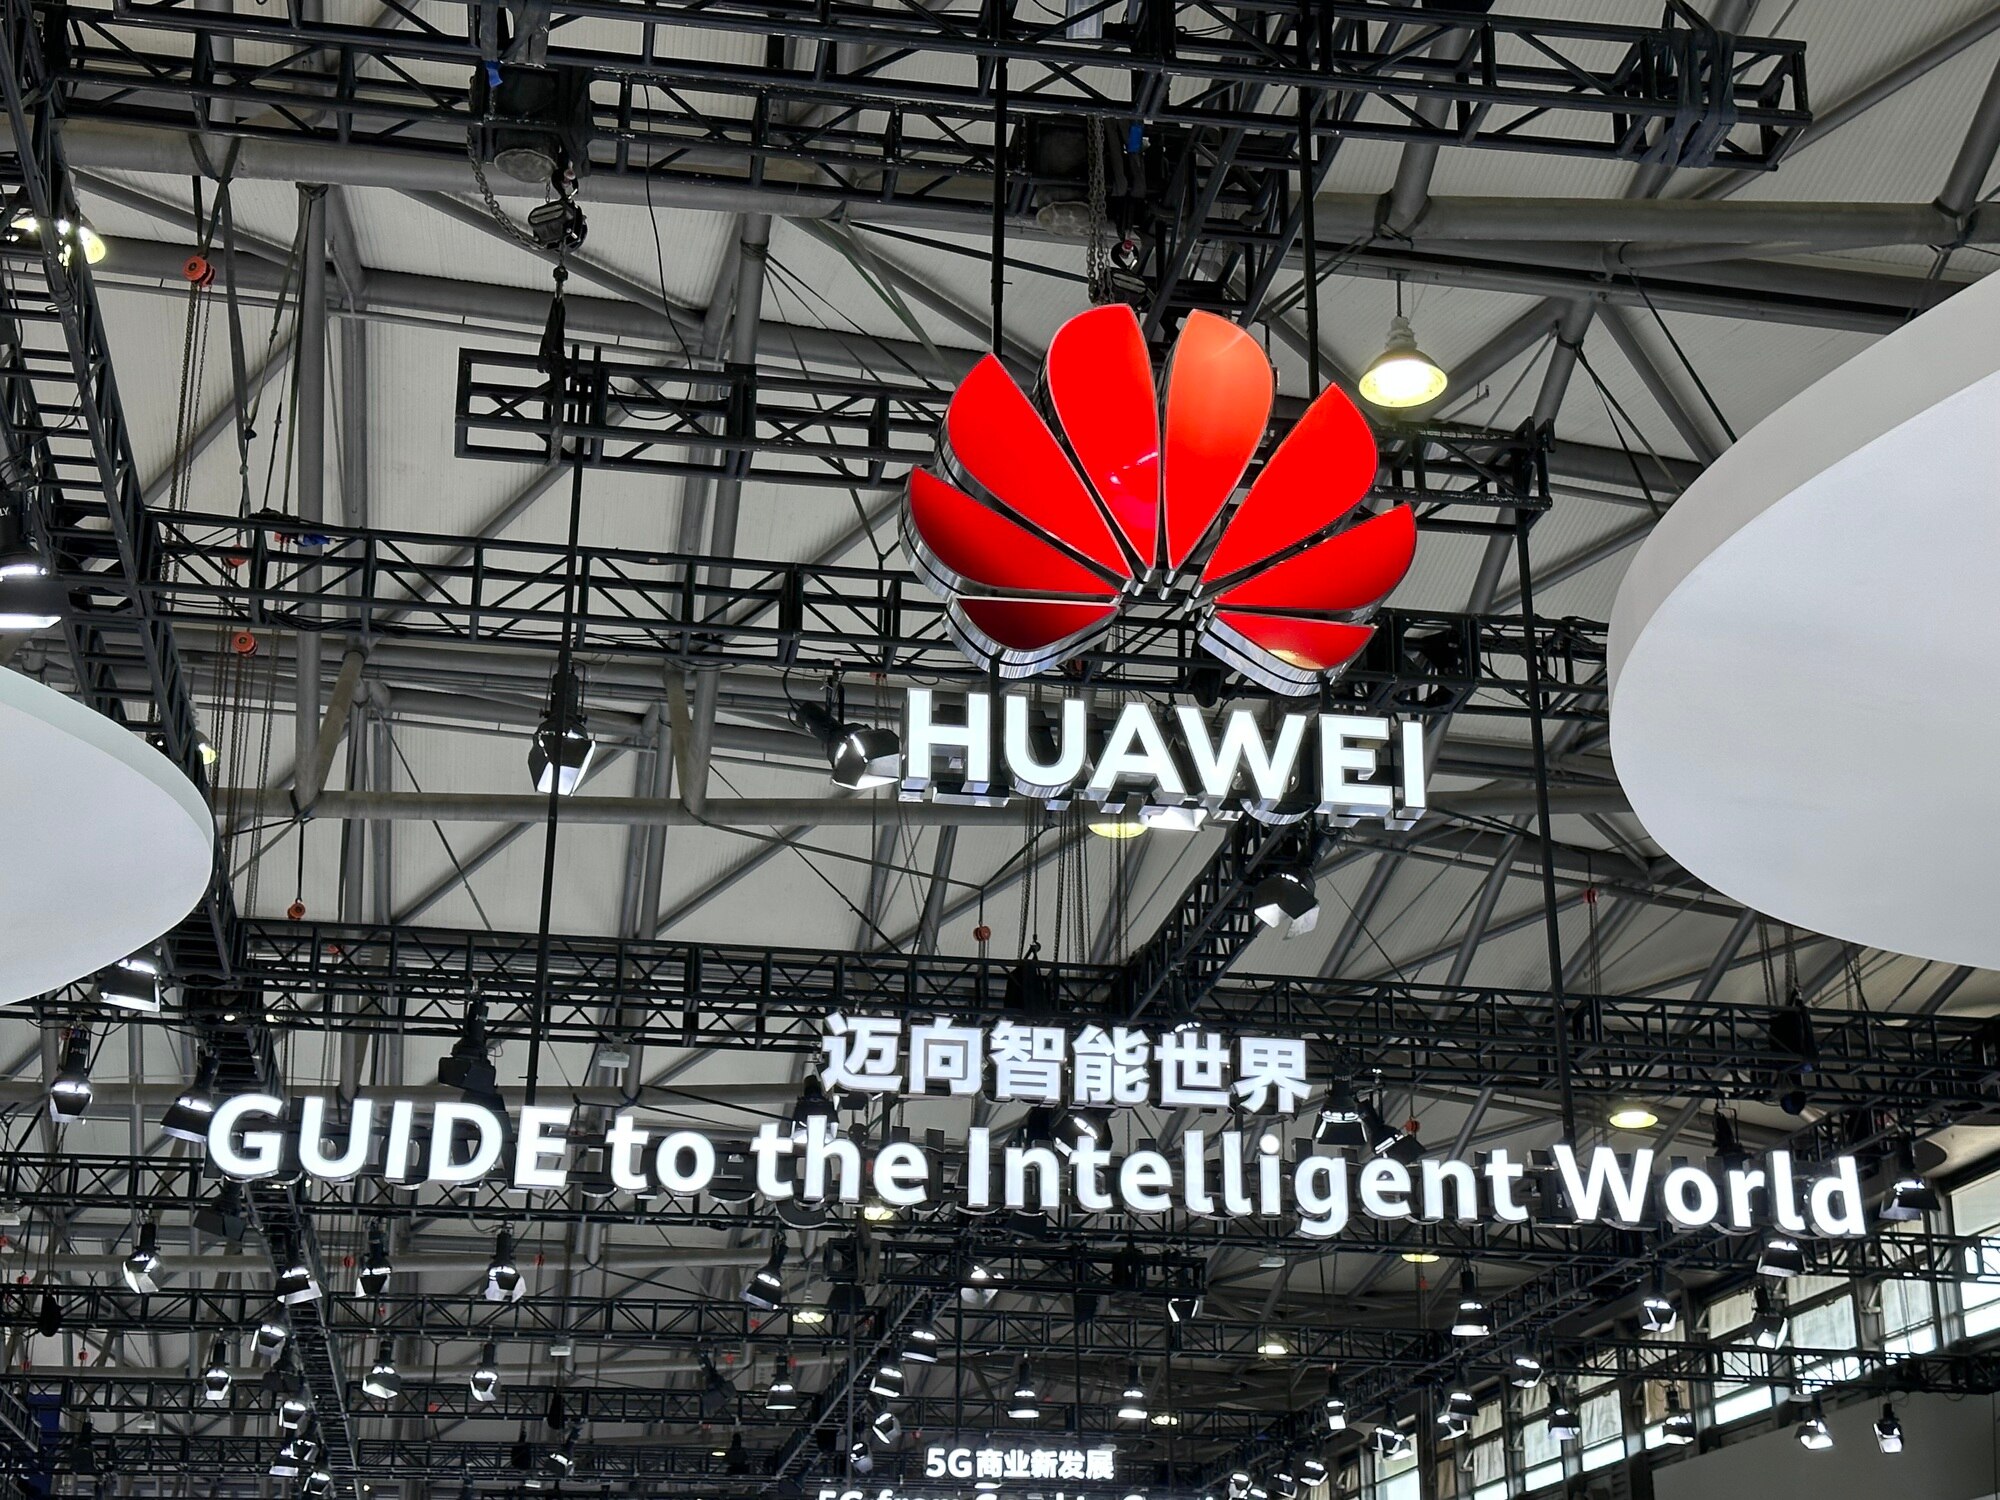 Huawei mở rộng hoạt động kinh doanh sang các lĩnh vực ít phụ thuộc chip cao cấp để giảm thiểu ảnh hưởng từ lệnh cấm từ Mỹ